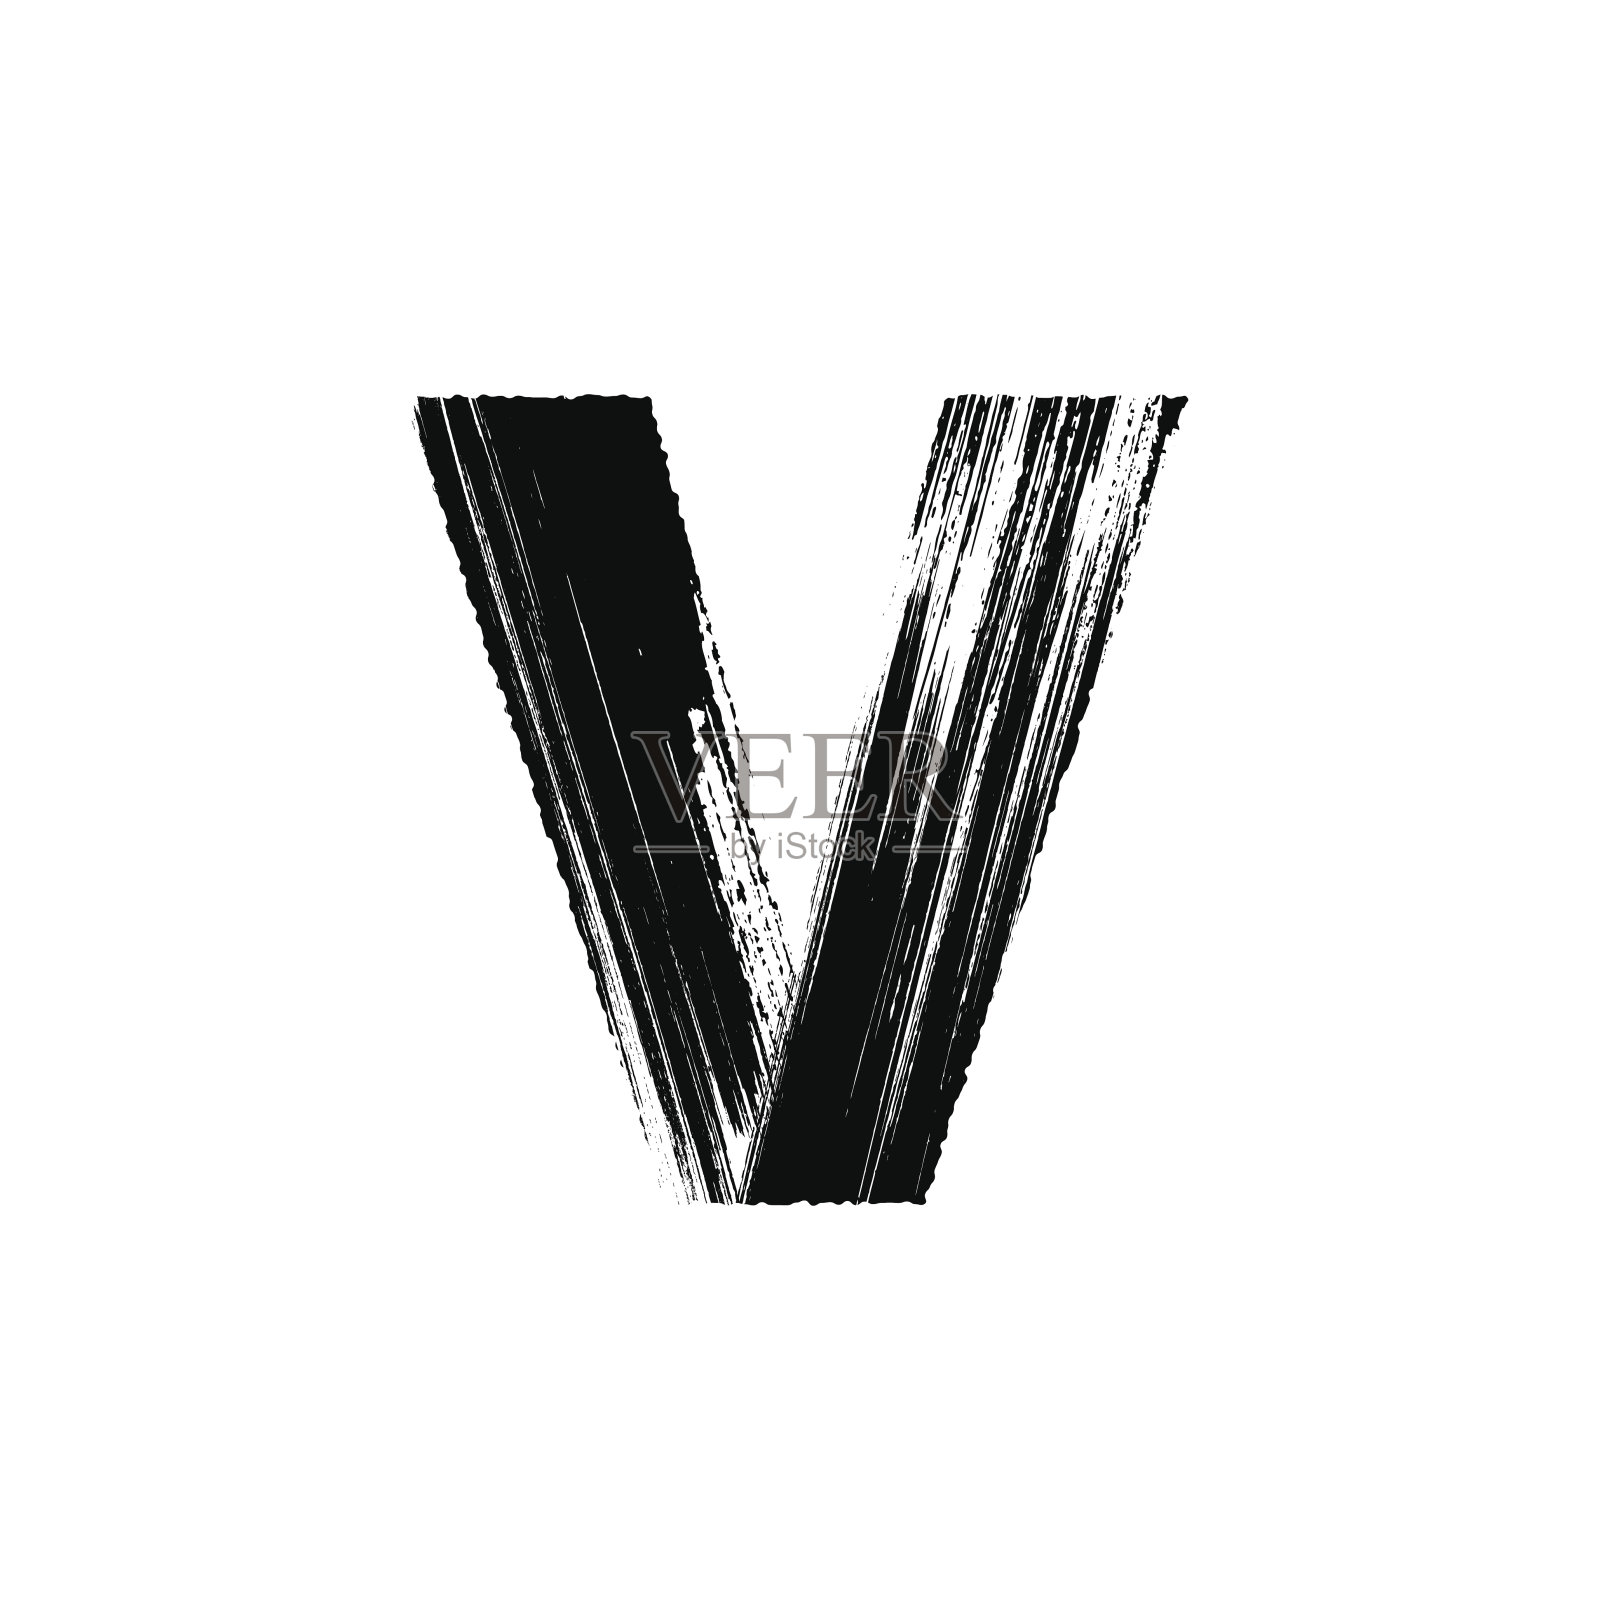 字母V用干画笔手绘设计元素图片